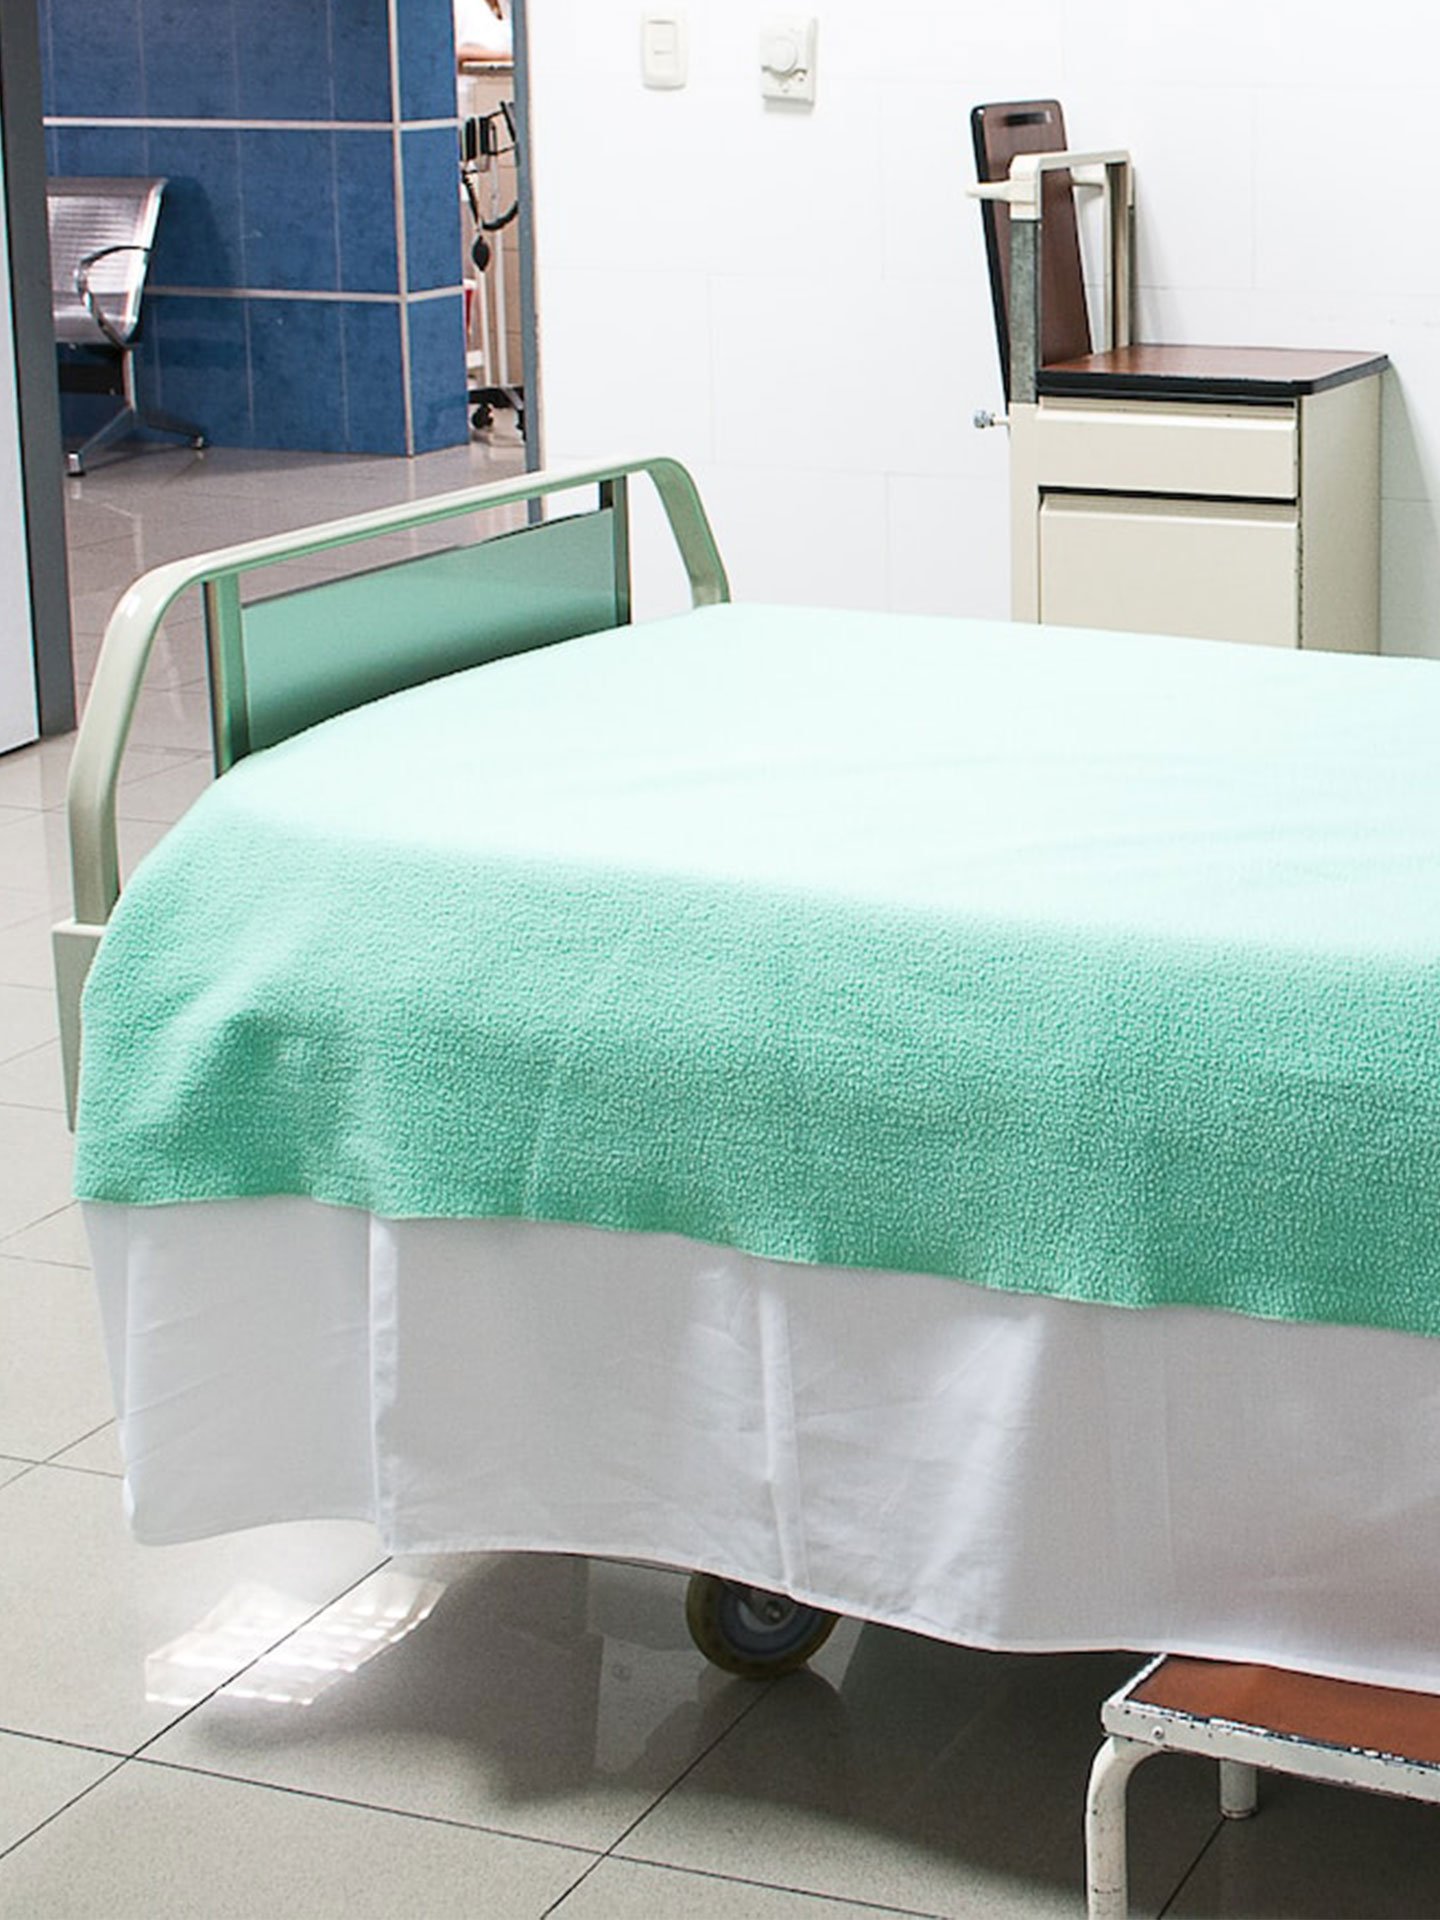 Krankenhausbett mit Inkontinenzstoffen